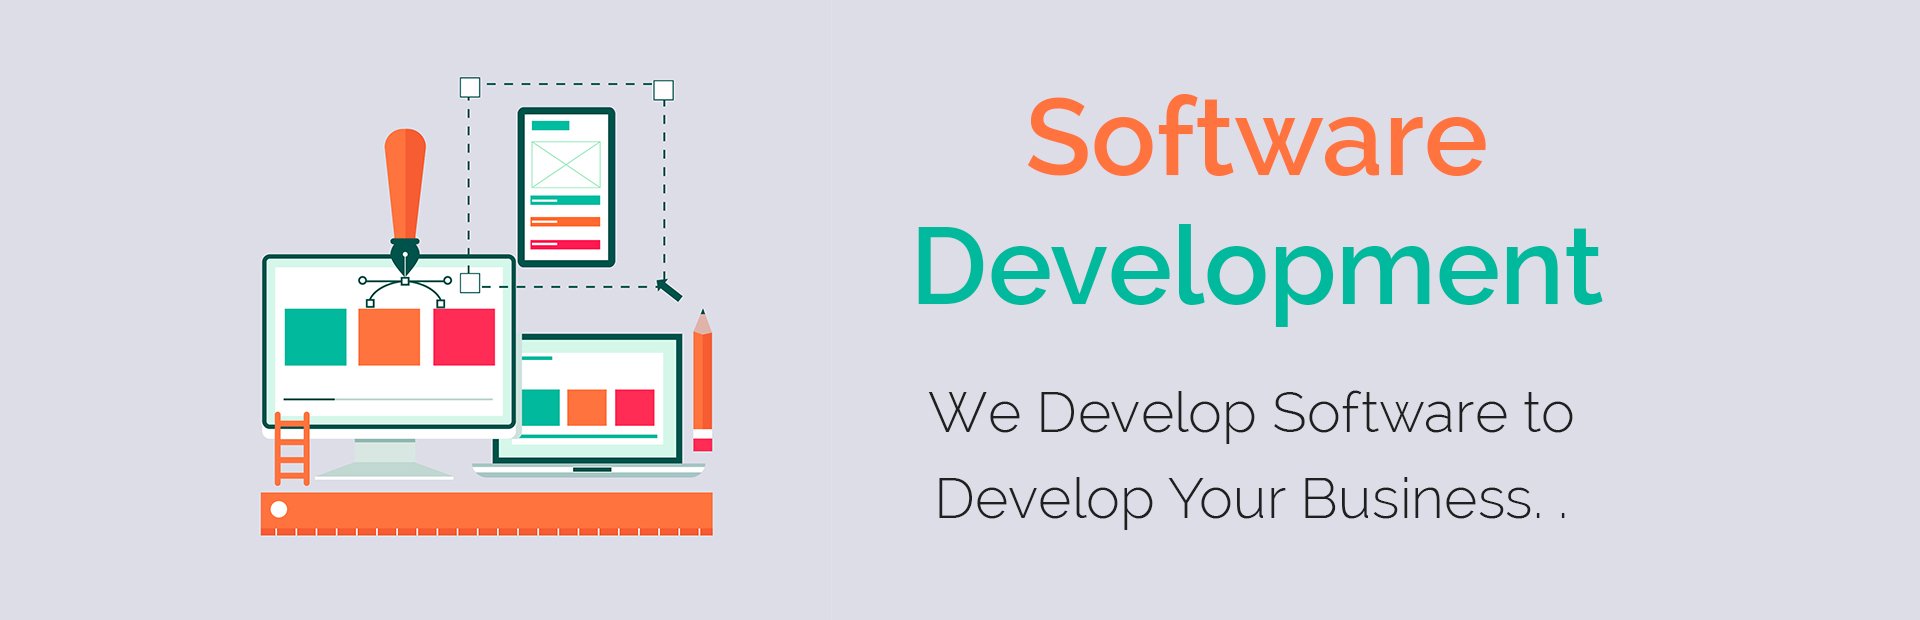 Software Development in Chennai, Tamil Nadu